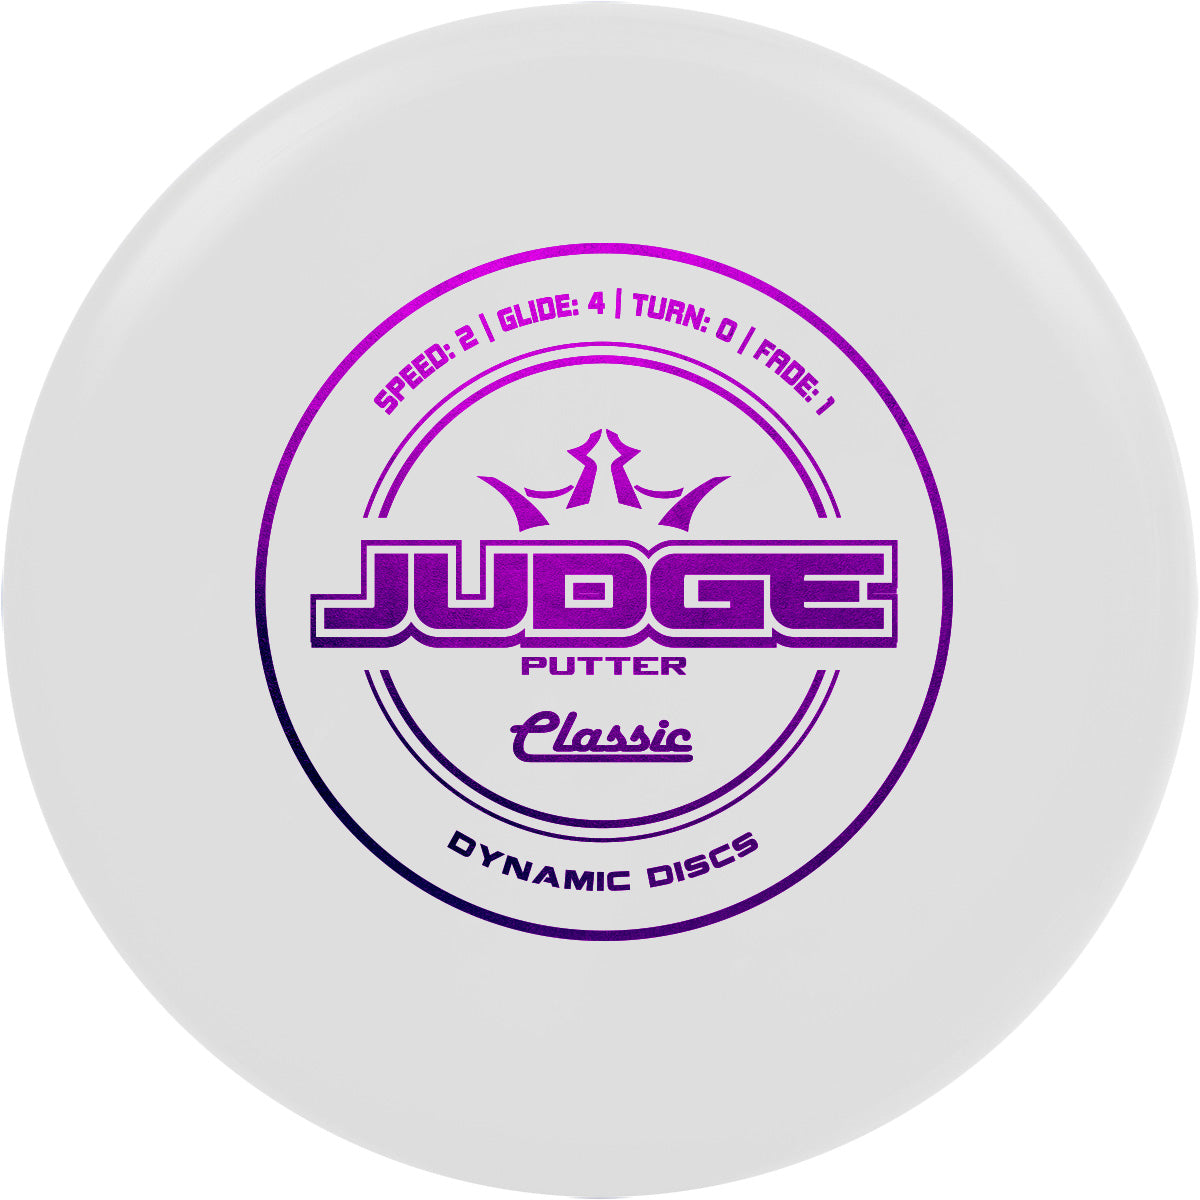 Classic Judge (6563643752513)